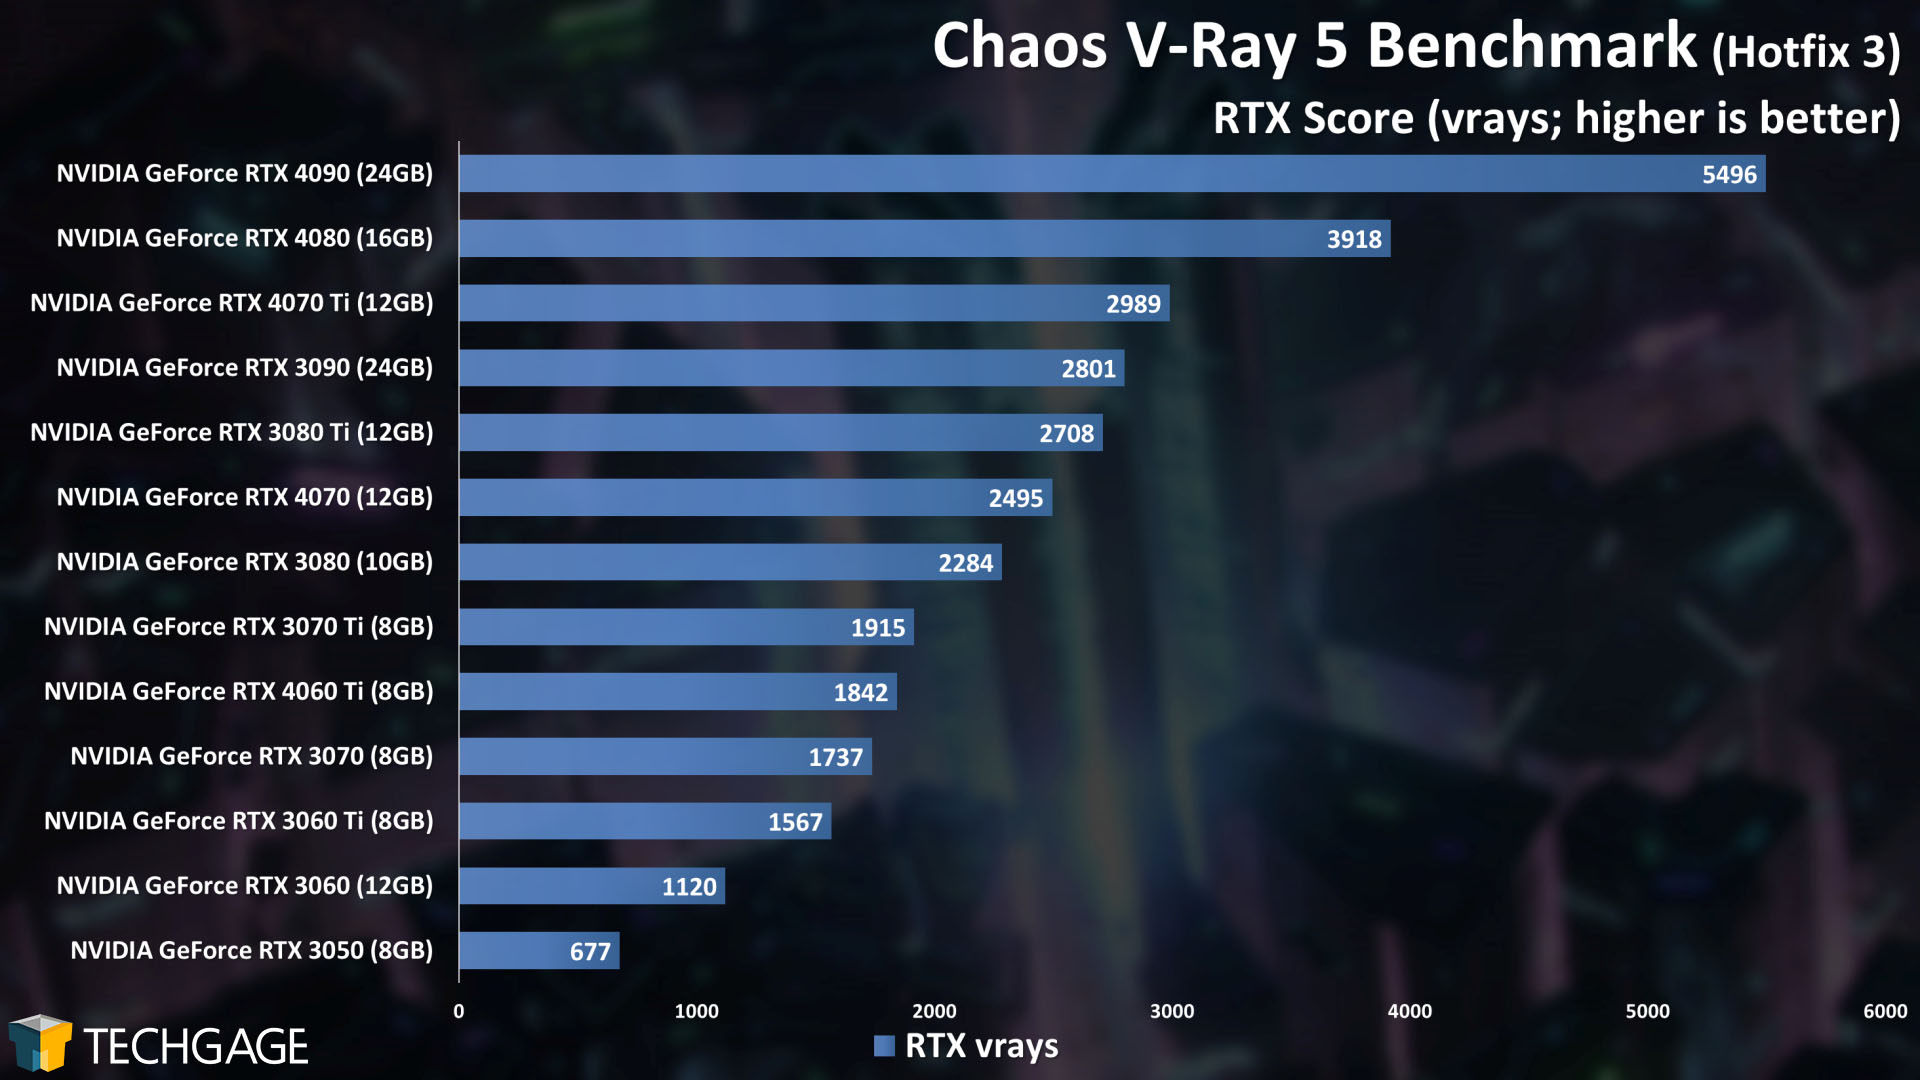 Chaos V-Ray - GPU Rendering Score (V-Ray Benchmark)